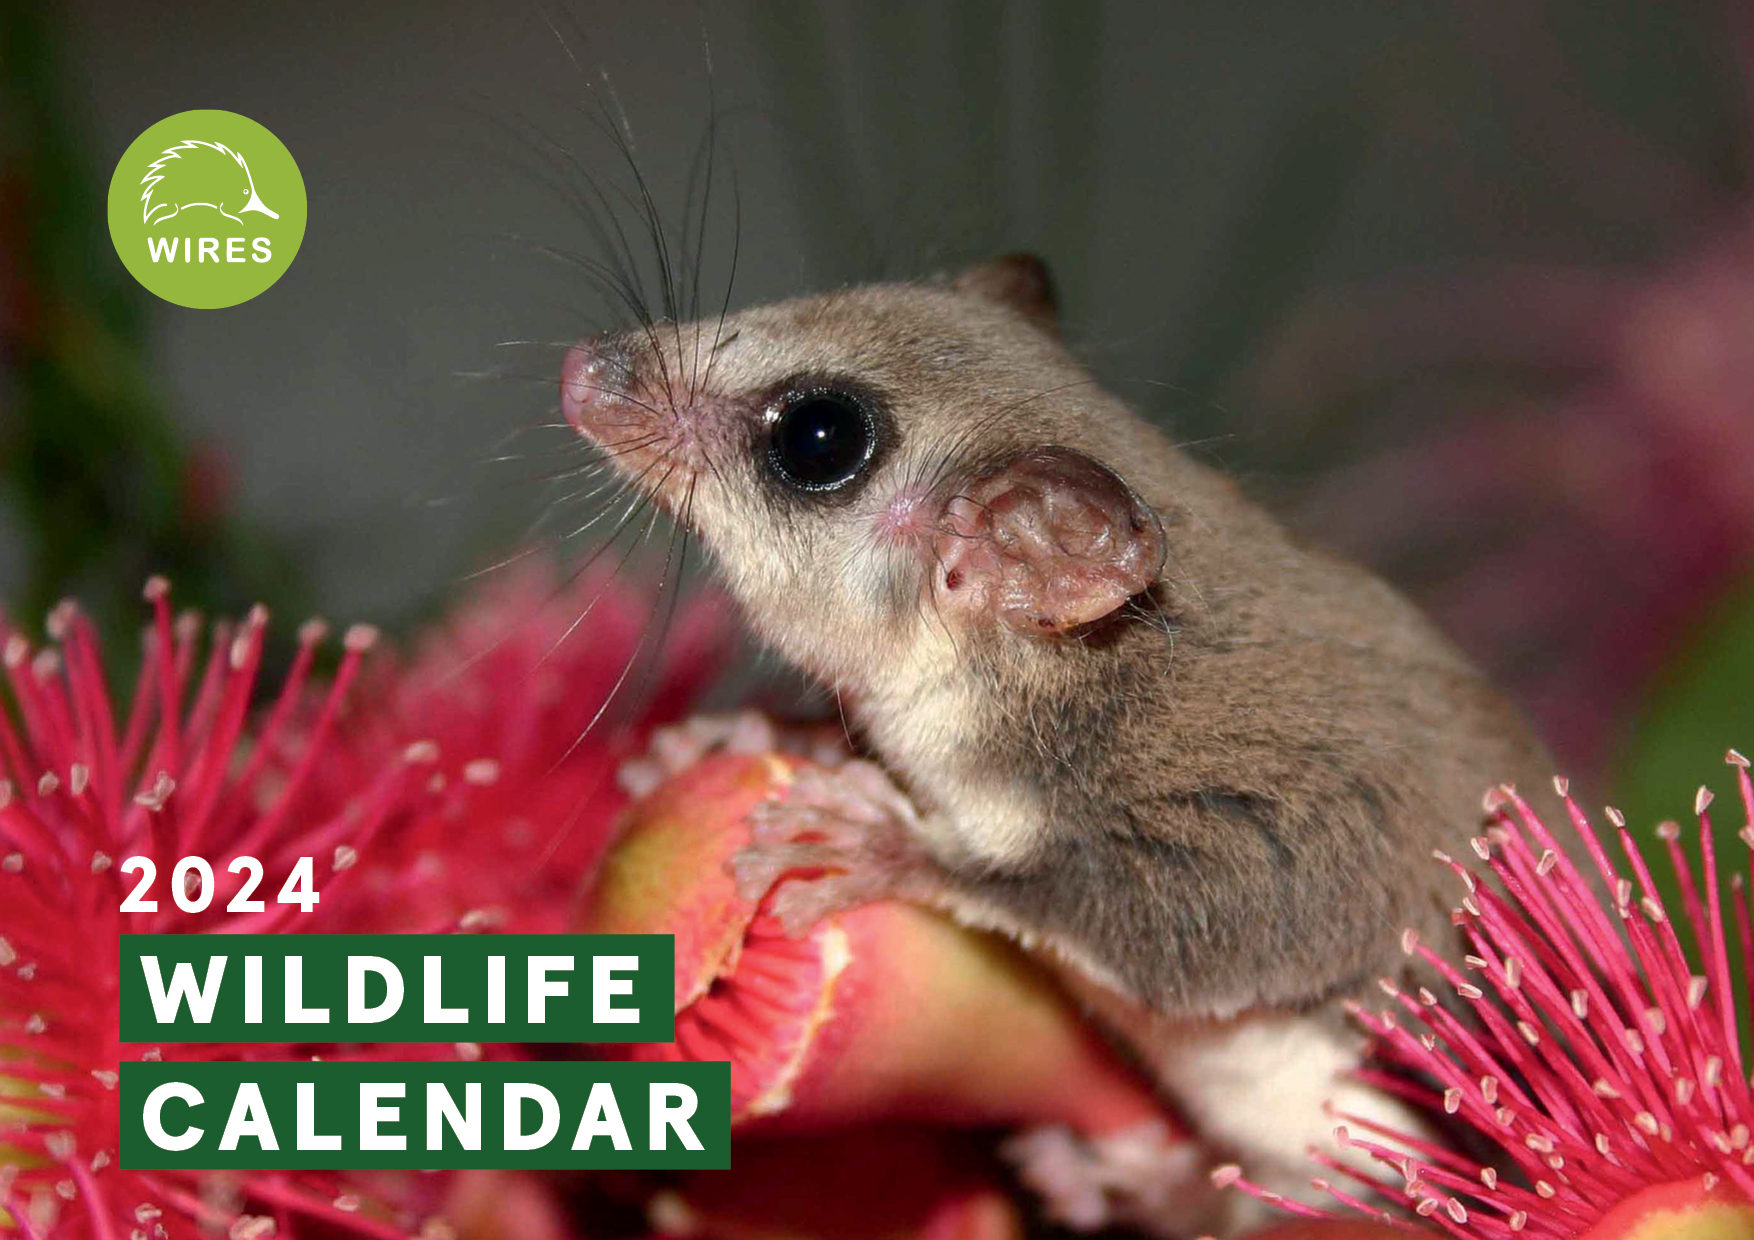 2024 Wildlife Calendar on Sale